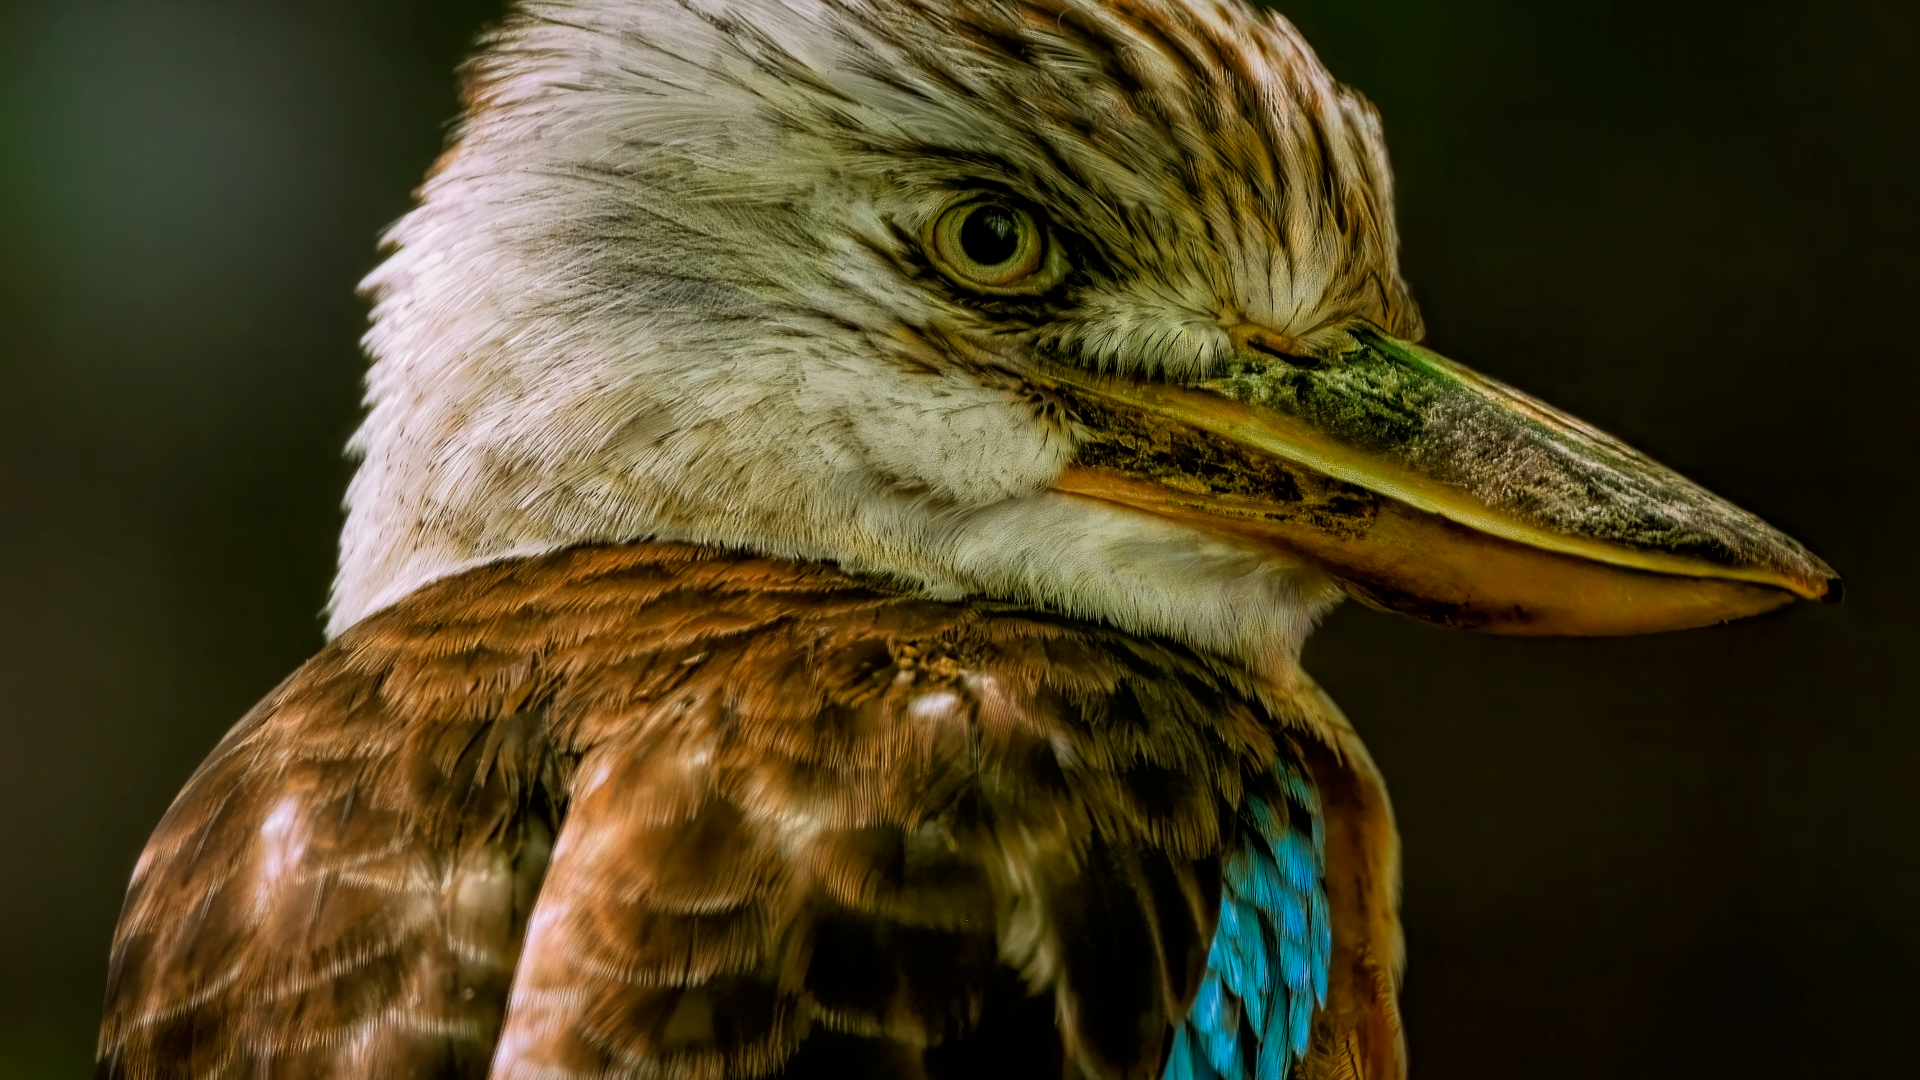 Kookaburra bird head close up